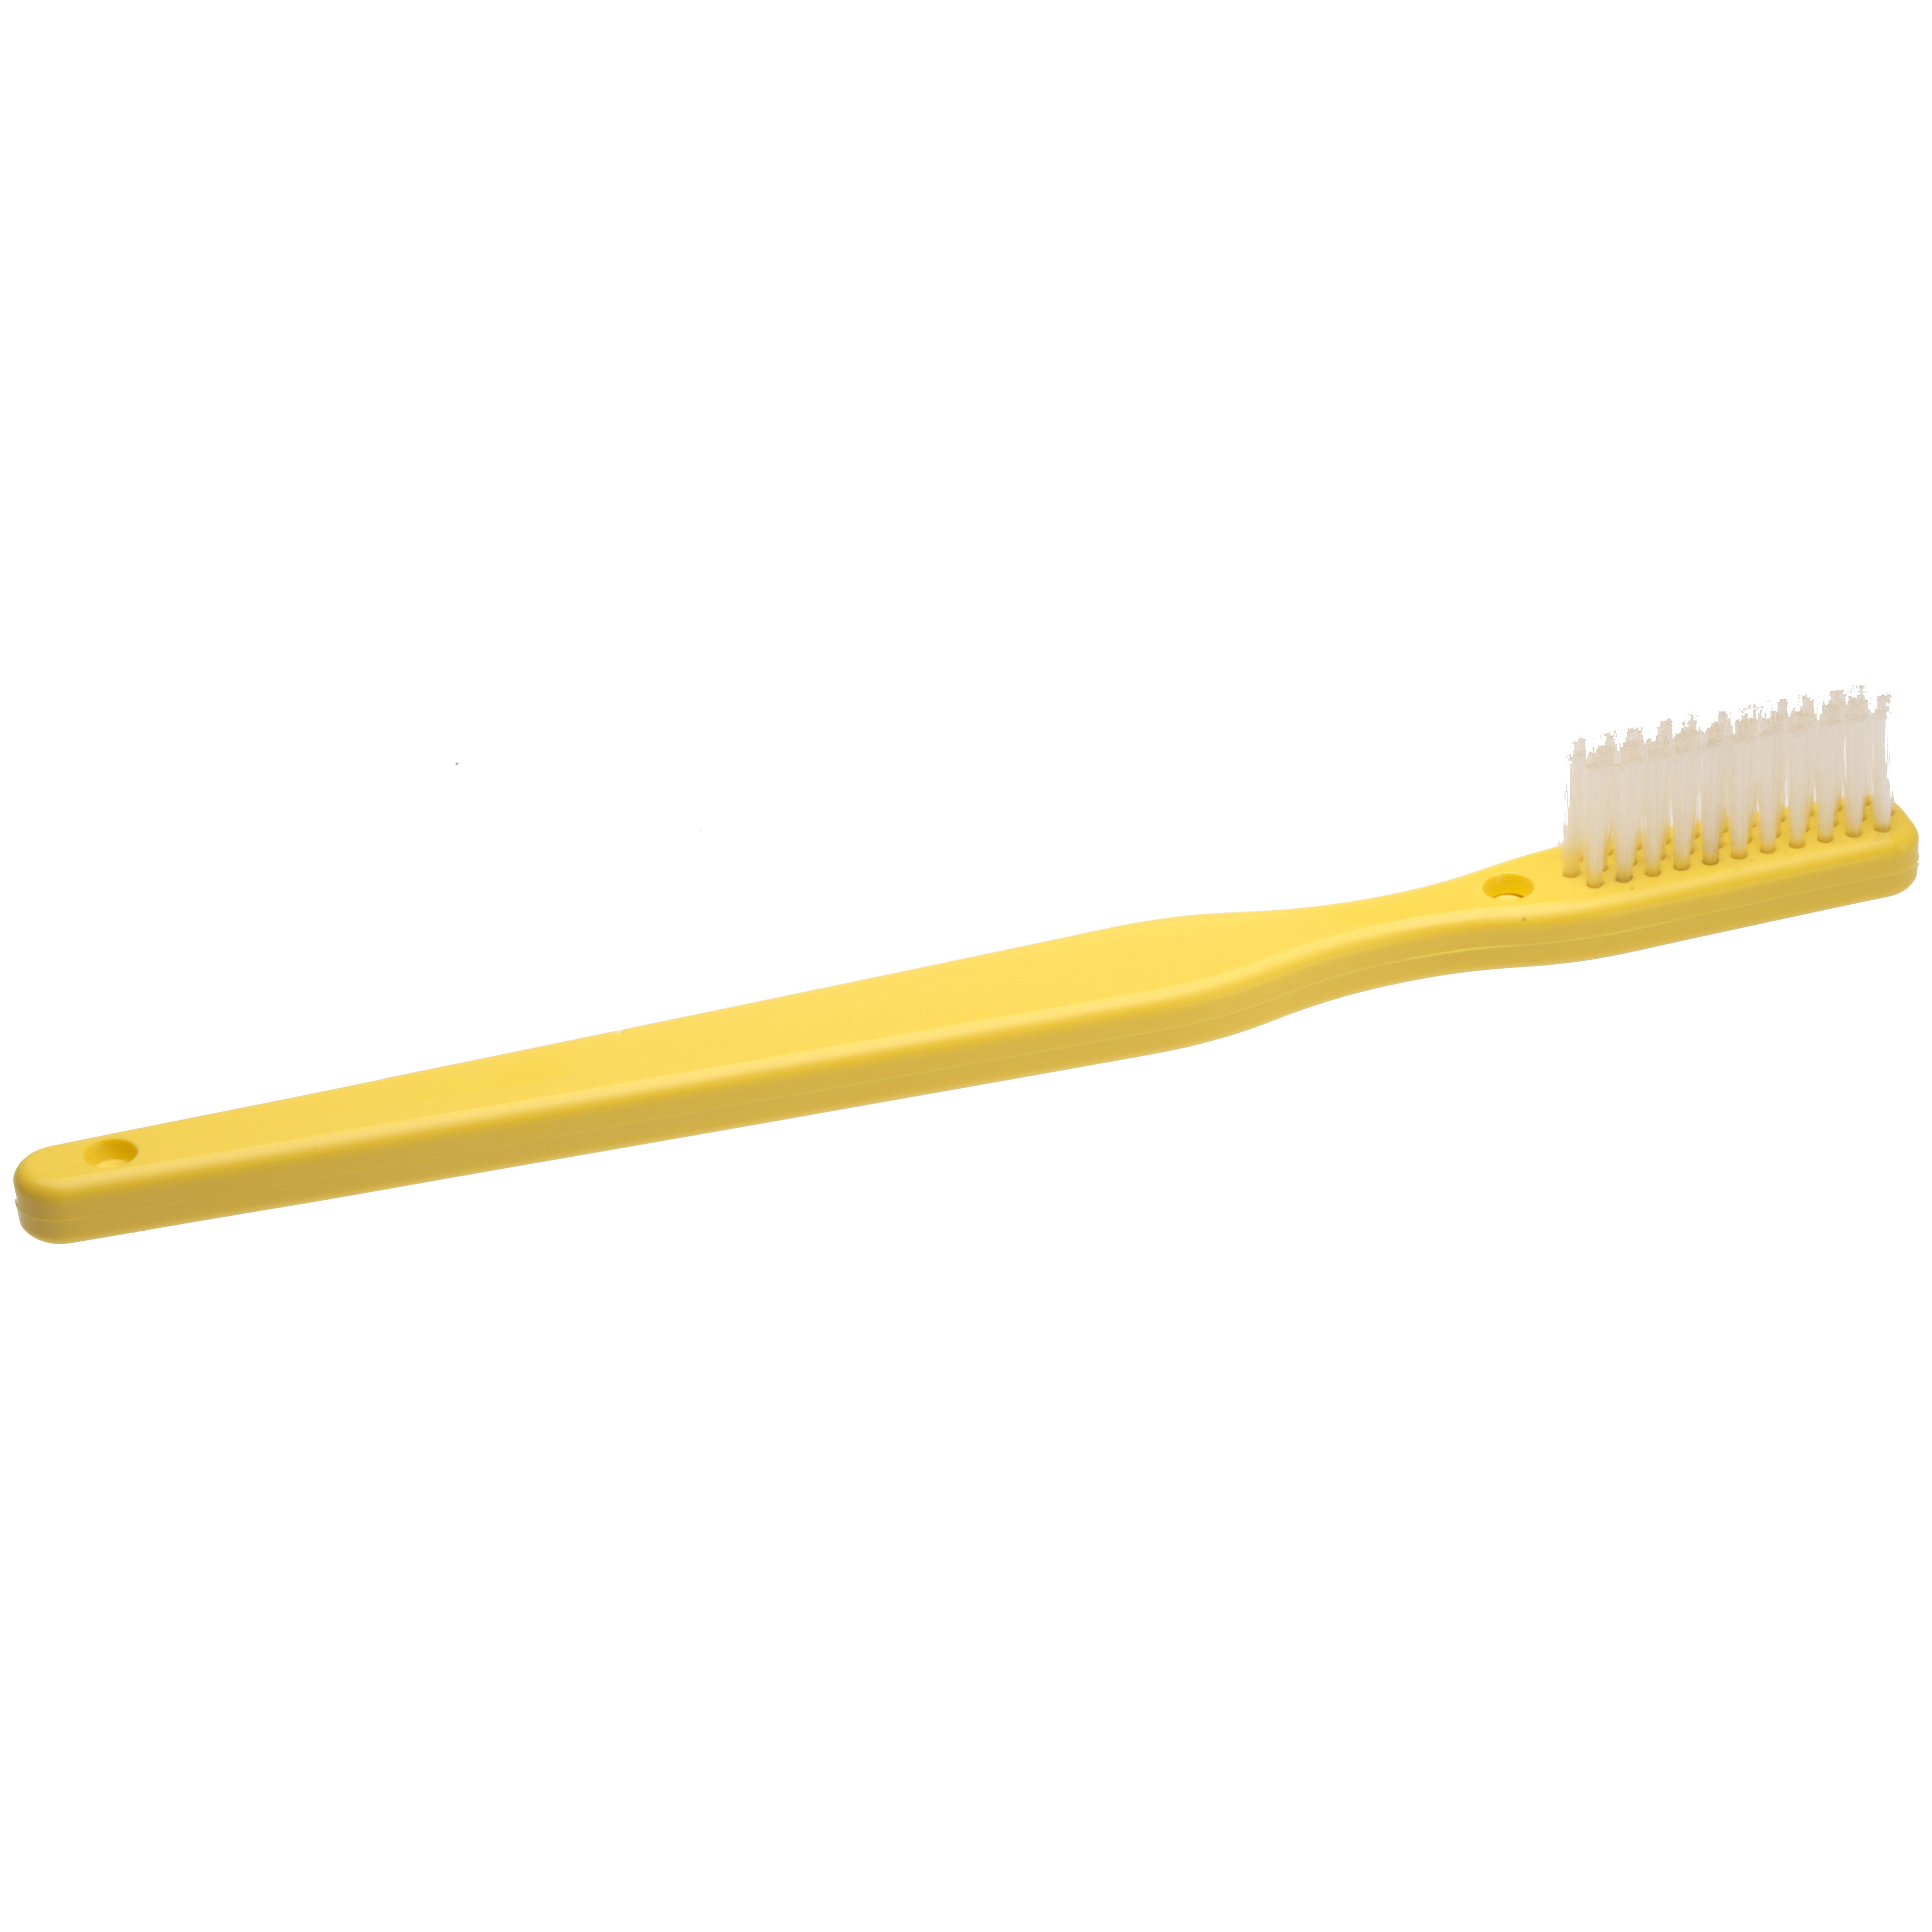 Oversized Demonstration Toothbrush (Yellow) - StarSmilez